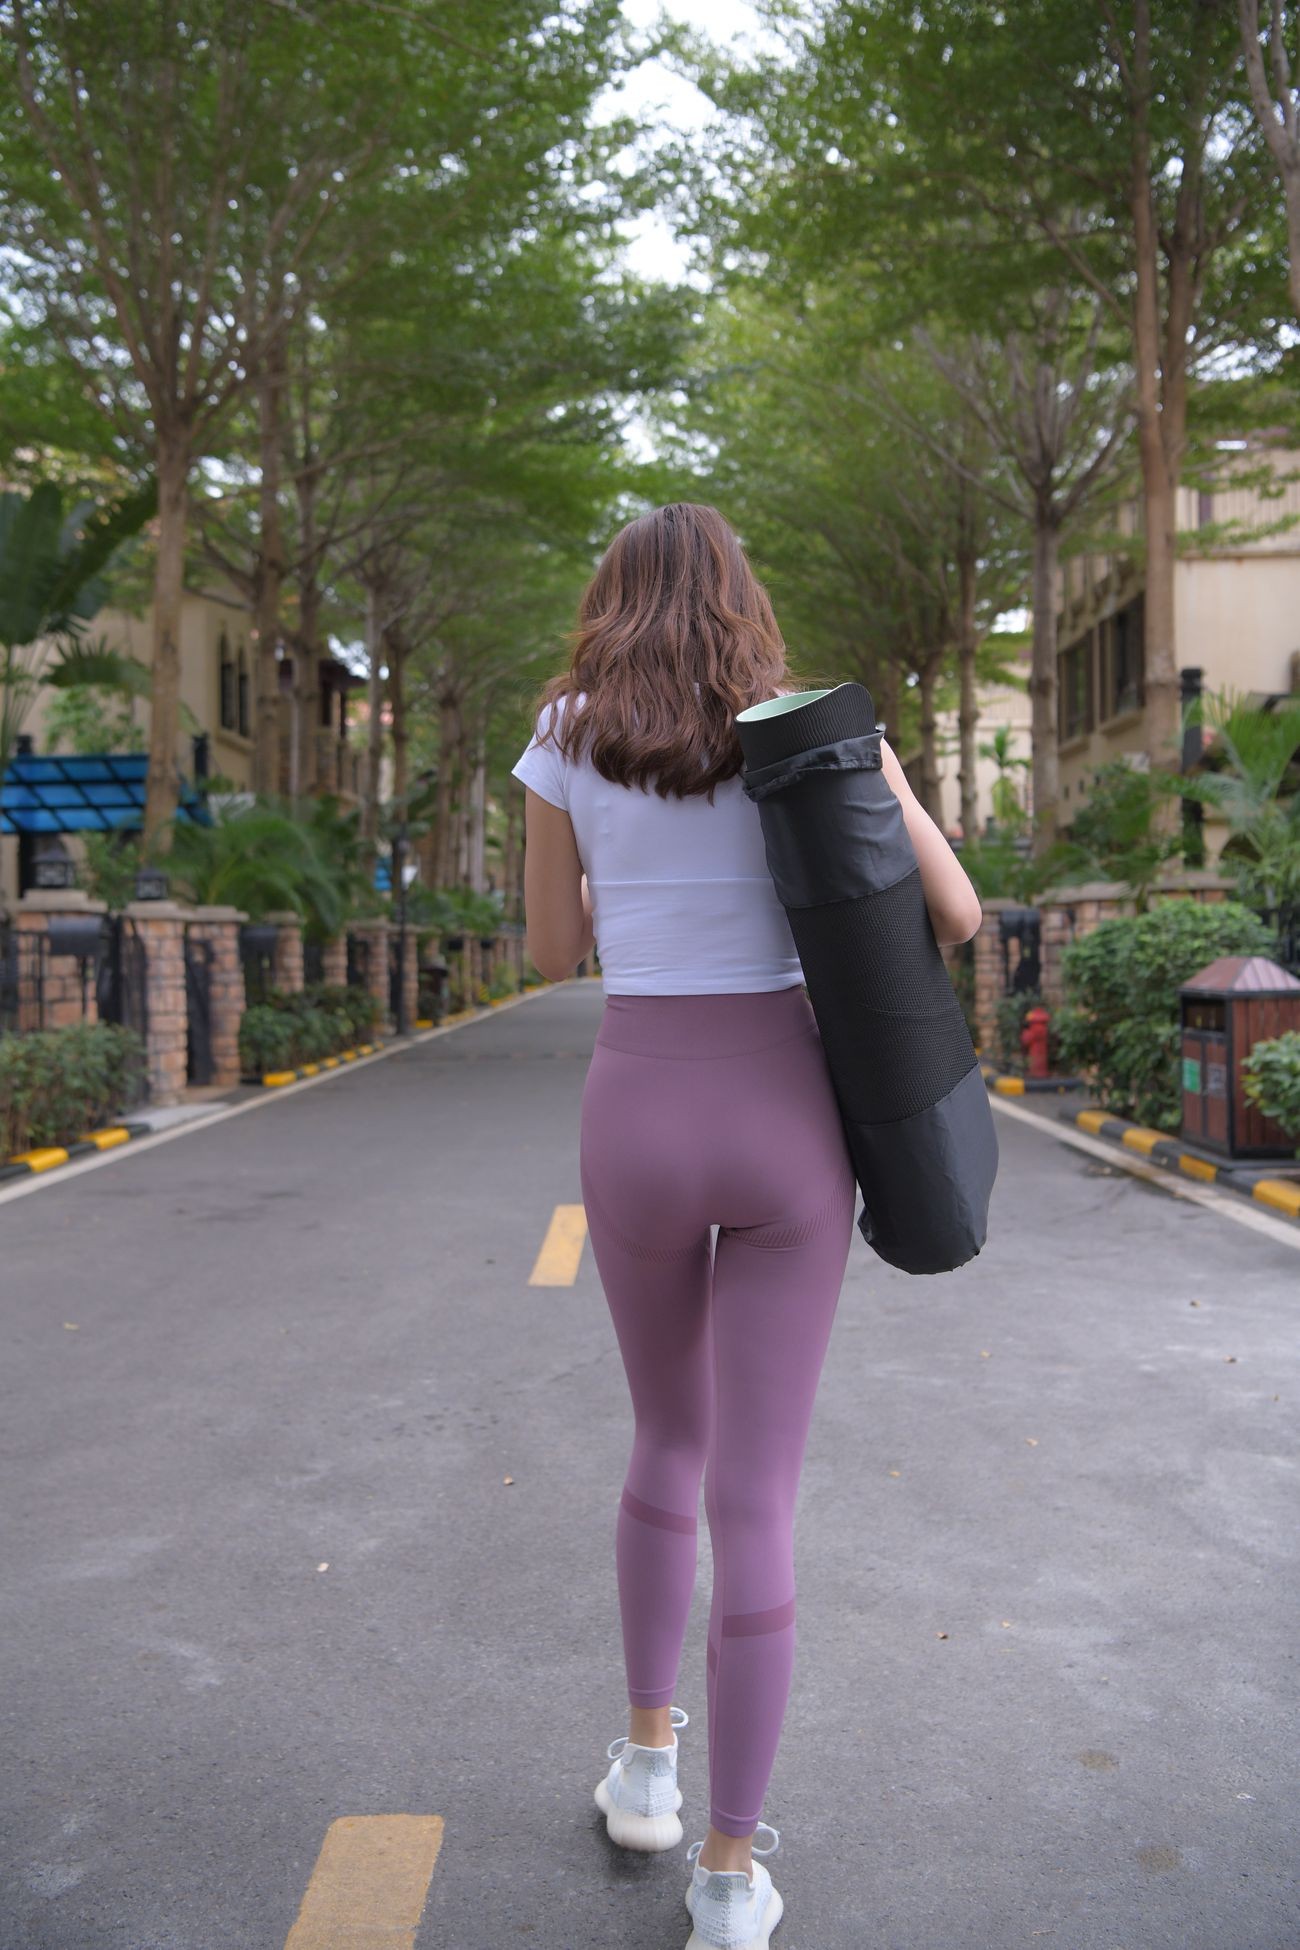 一只麋鹿旅拍摄影作品紫色瑜伽裤美女 (15)